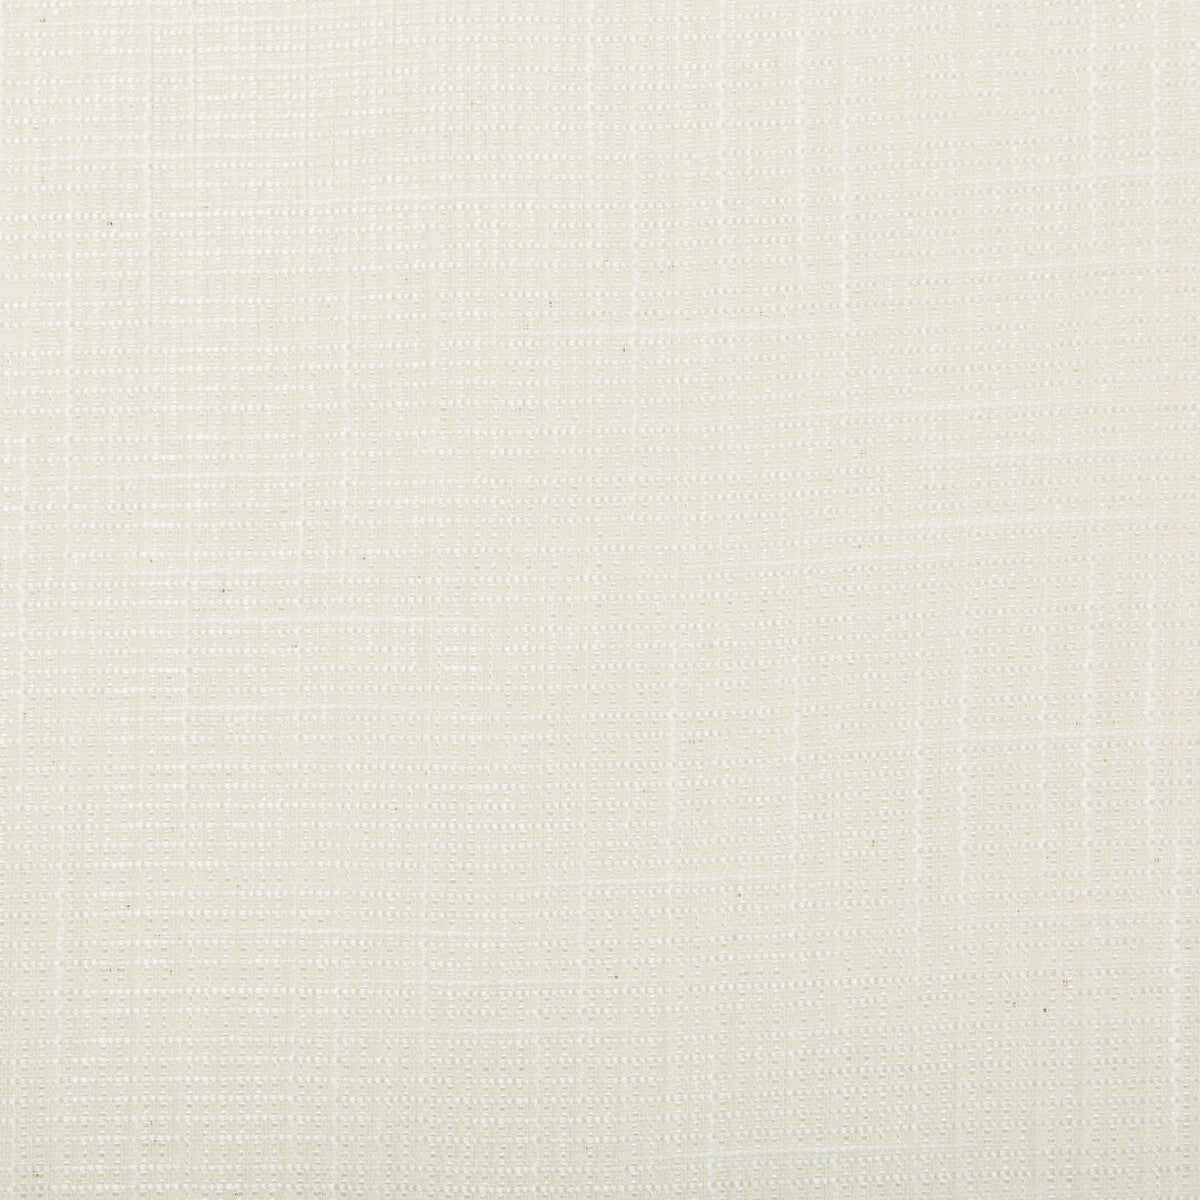 Kravet Basics fabric in 4725-101 color - pattern 4725.101.0 - by Kravet Basics